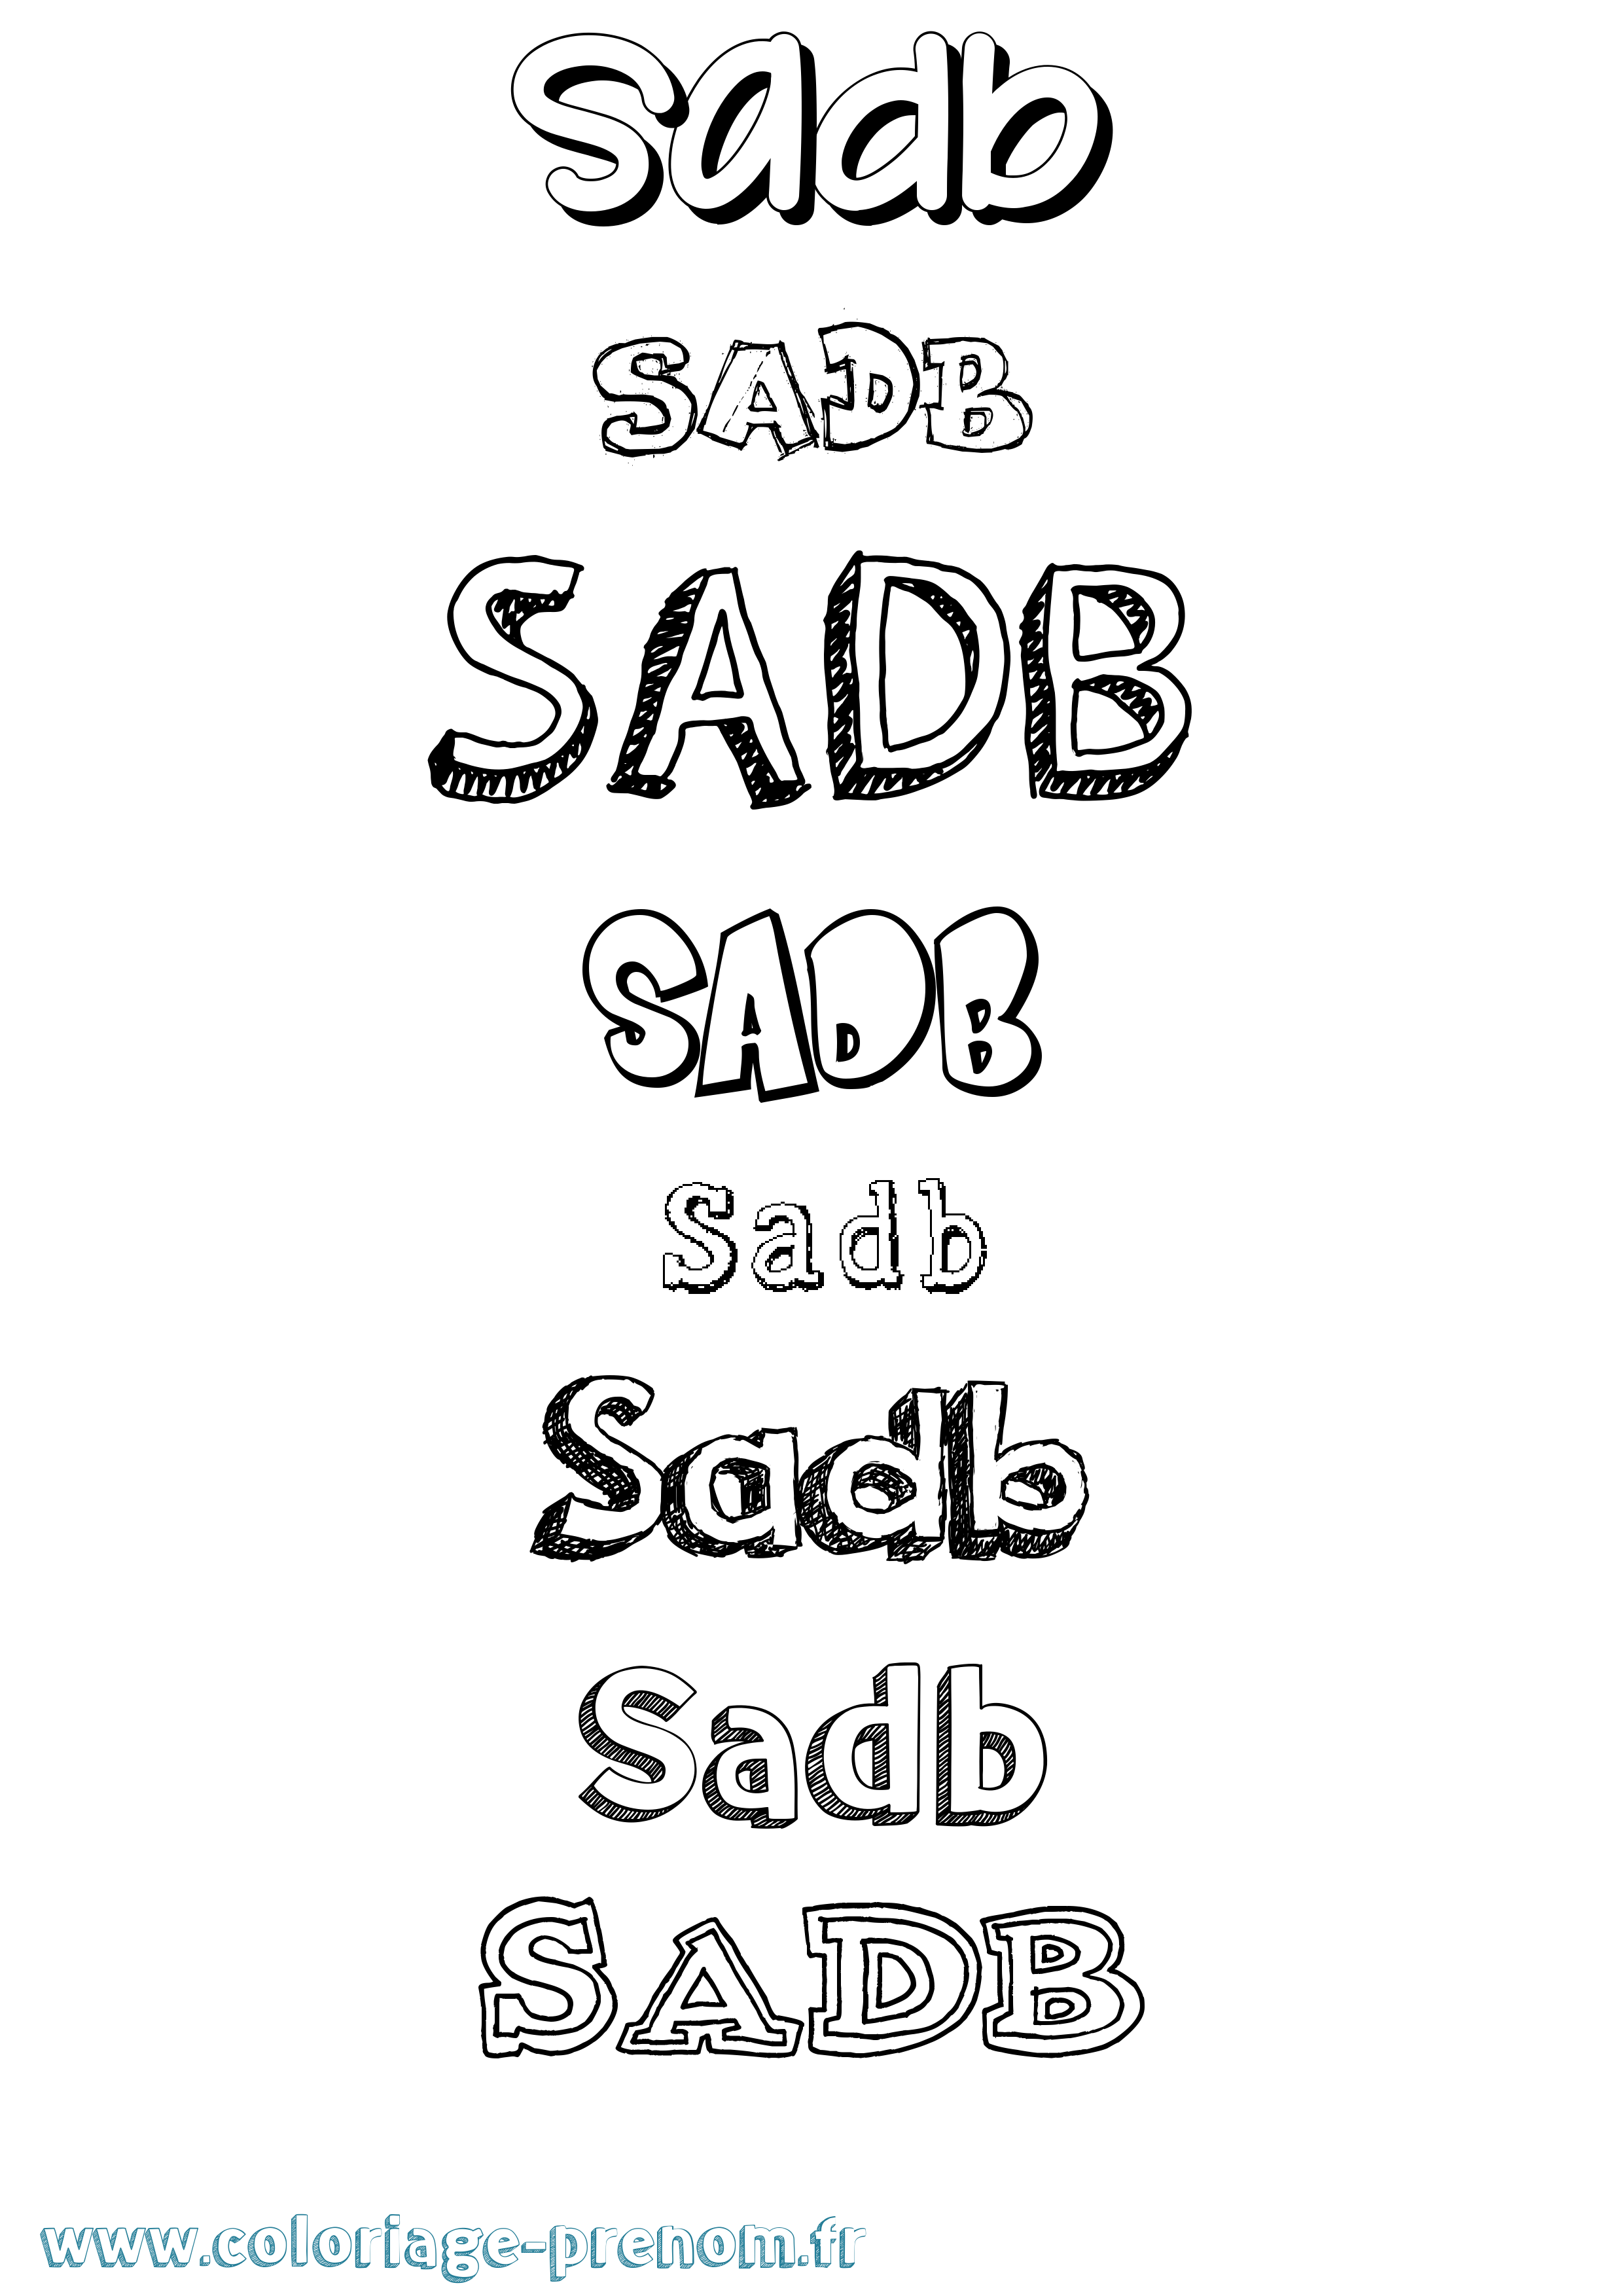 Coloriage prénom Sadb Dessiné